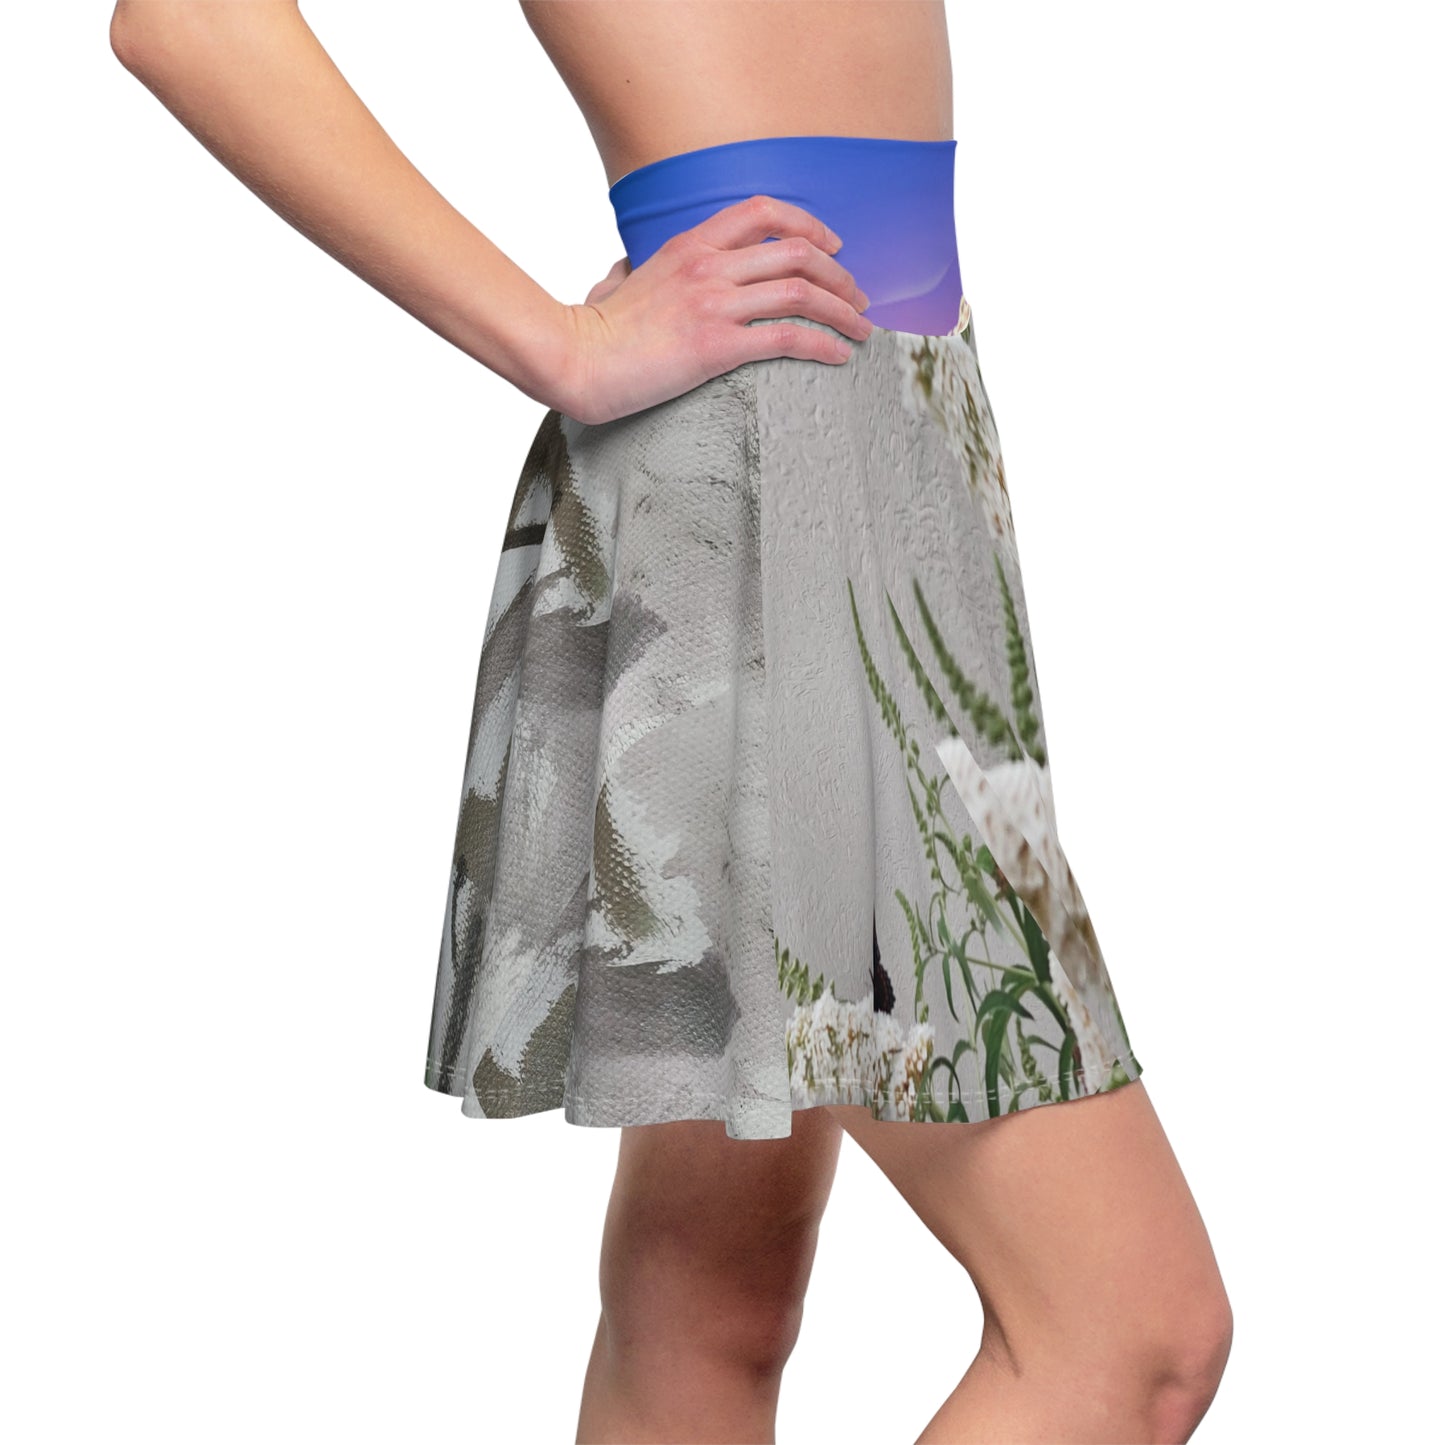 Spiritual-themed Skater Skirt for women